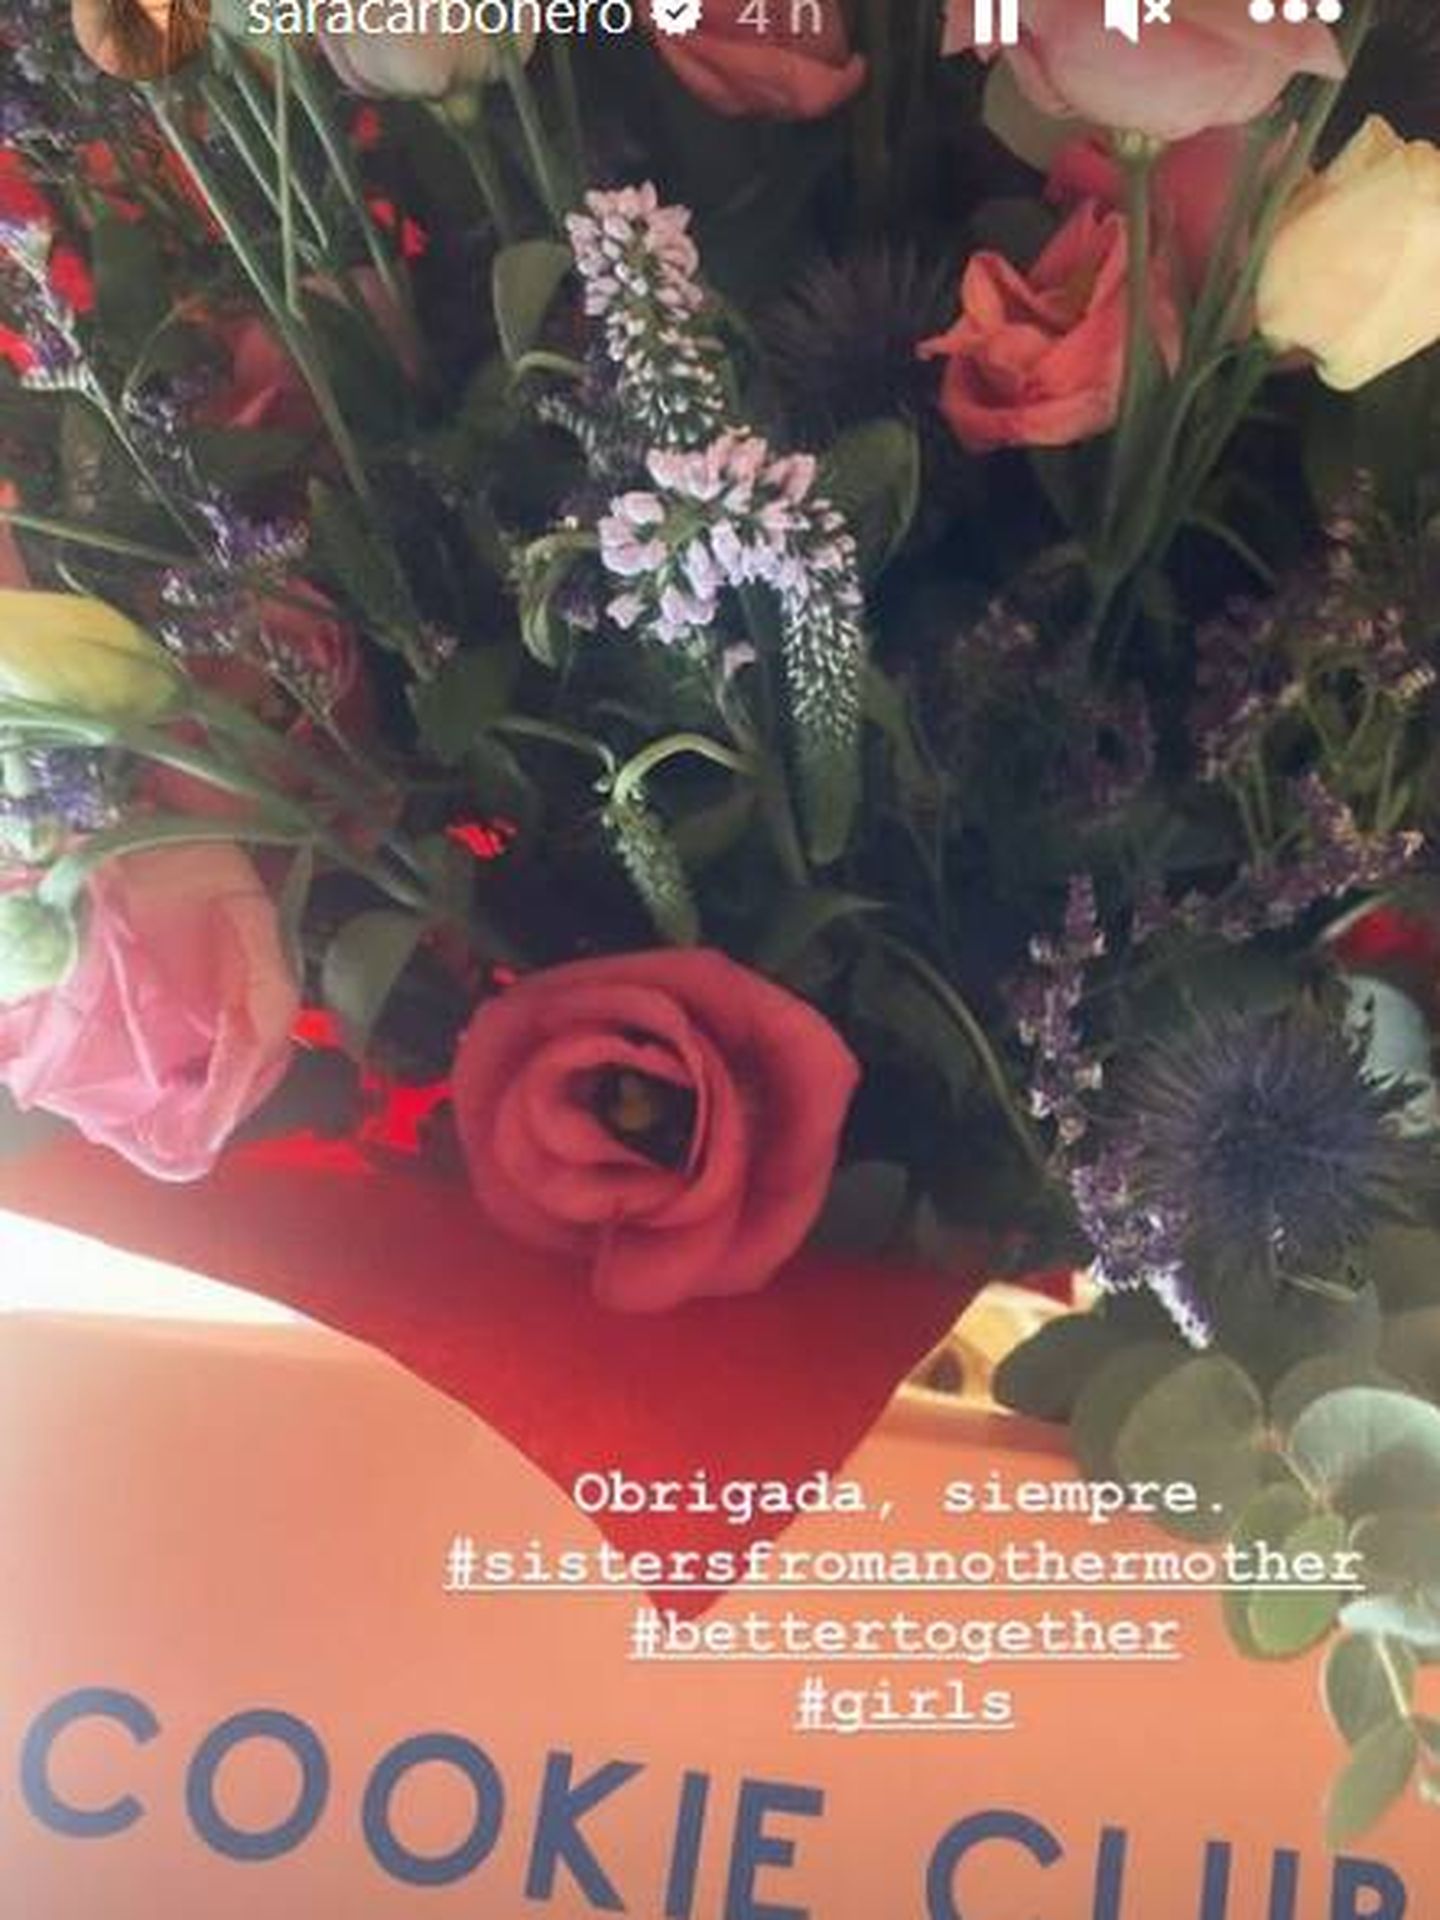 Ramo de flores y caja de dulces que ha mostrado Sara Carbonero en sus redes sociales. (IG)